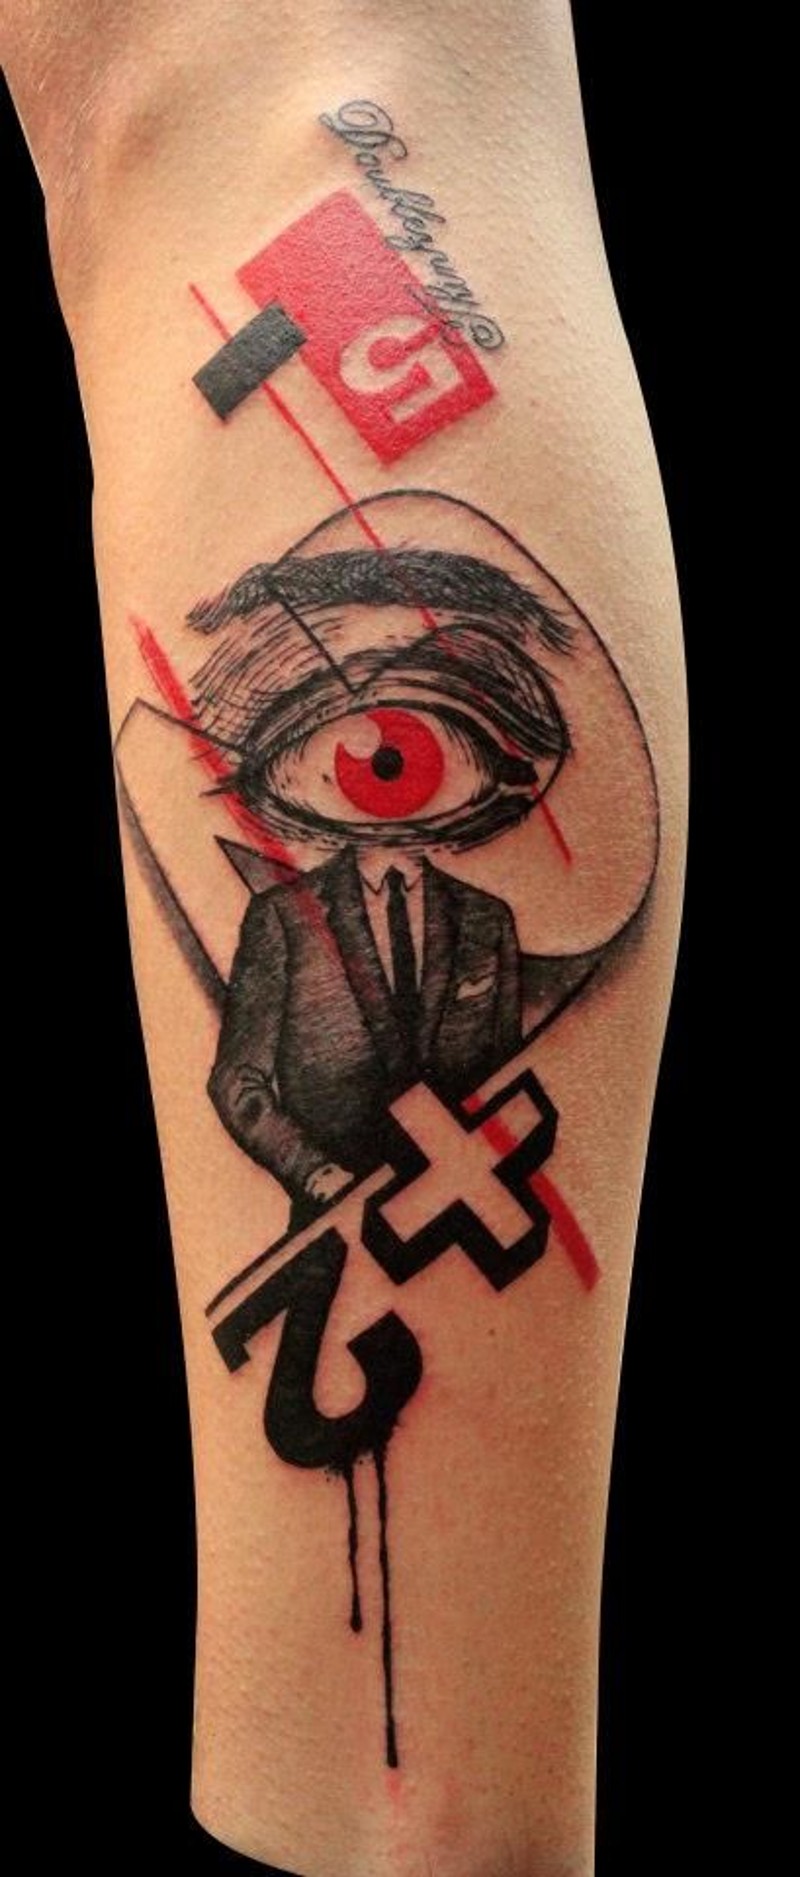 Tatuaje en la pierna, estilo original combinado, colores negro y rojo